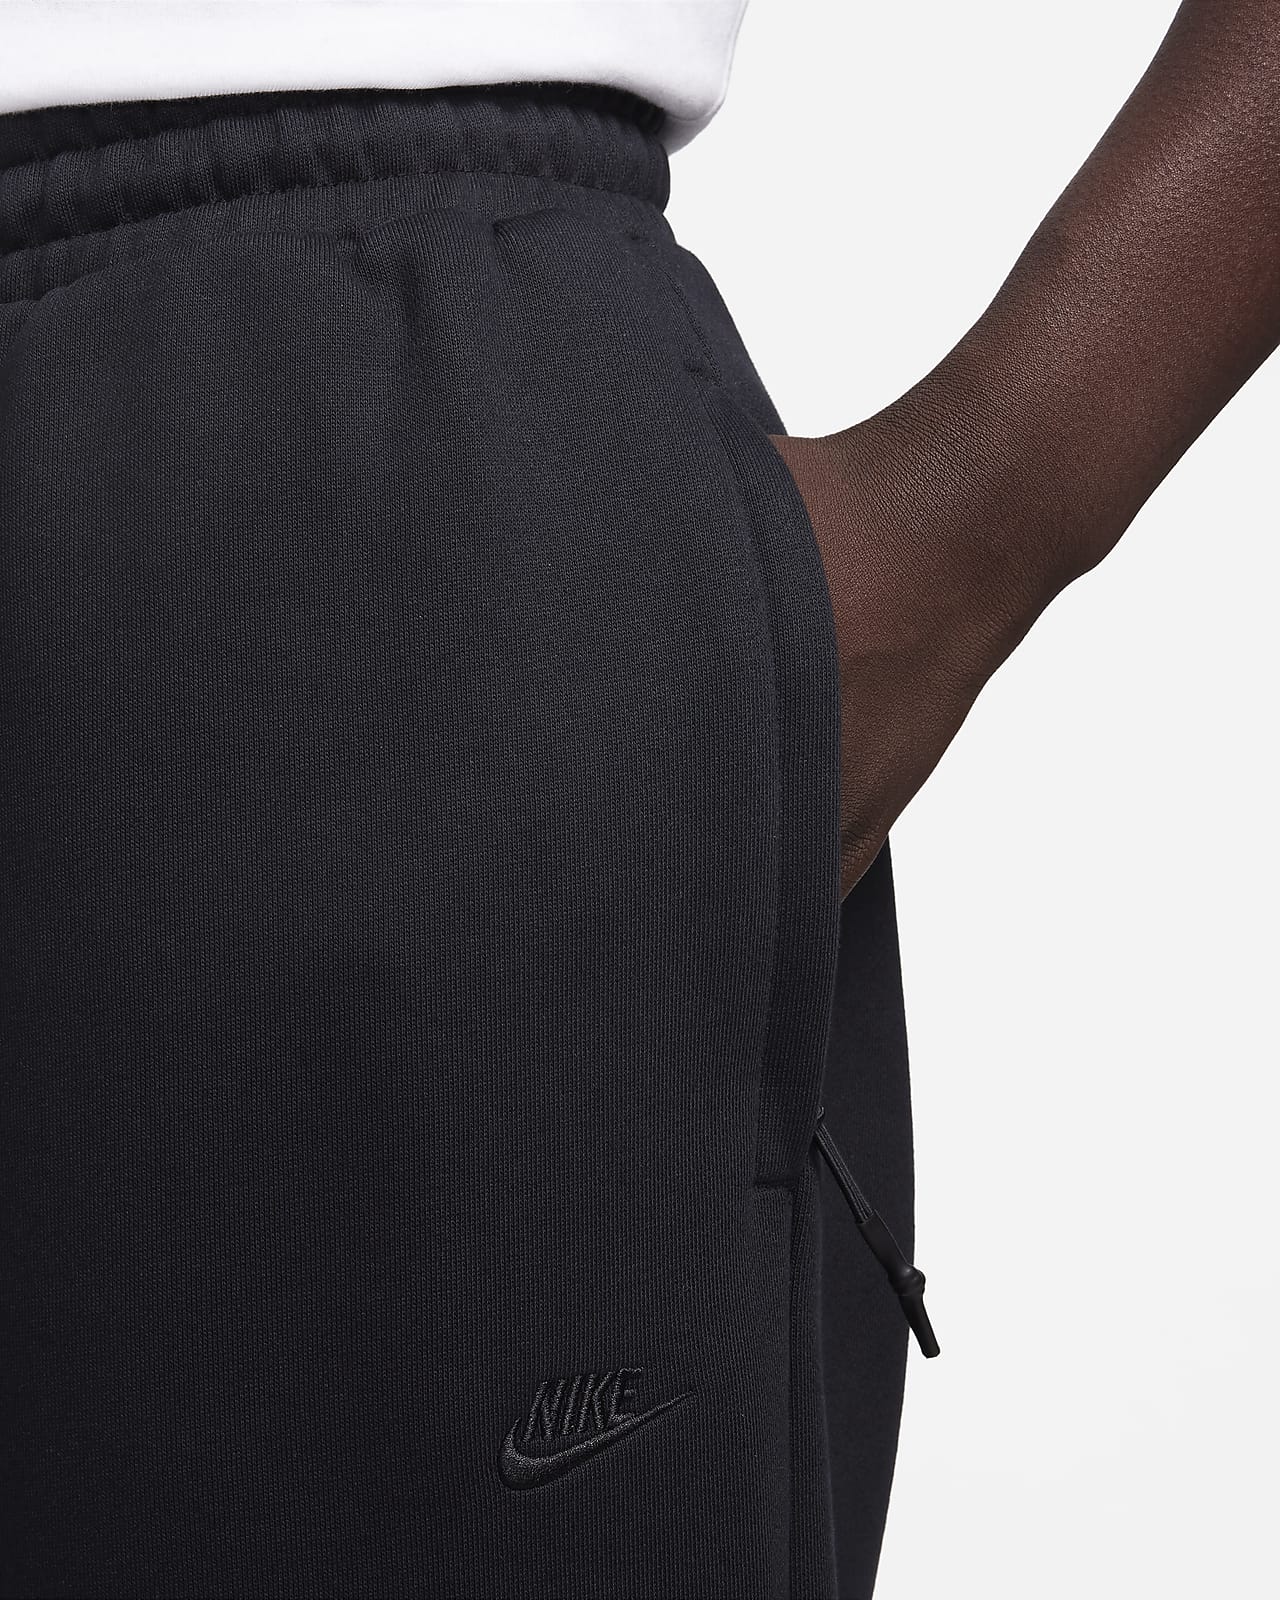 Nike Sportswear Therma-FIT Tech Pack Men's Repel Winterized Trousers